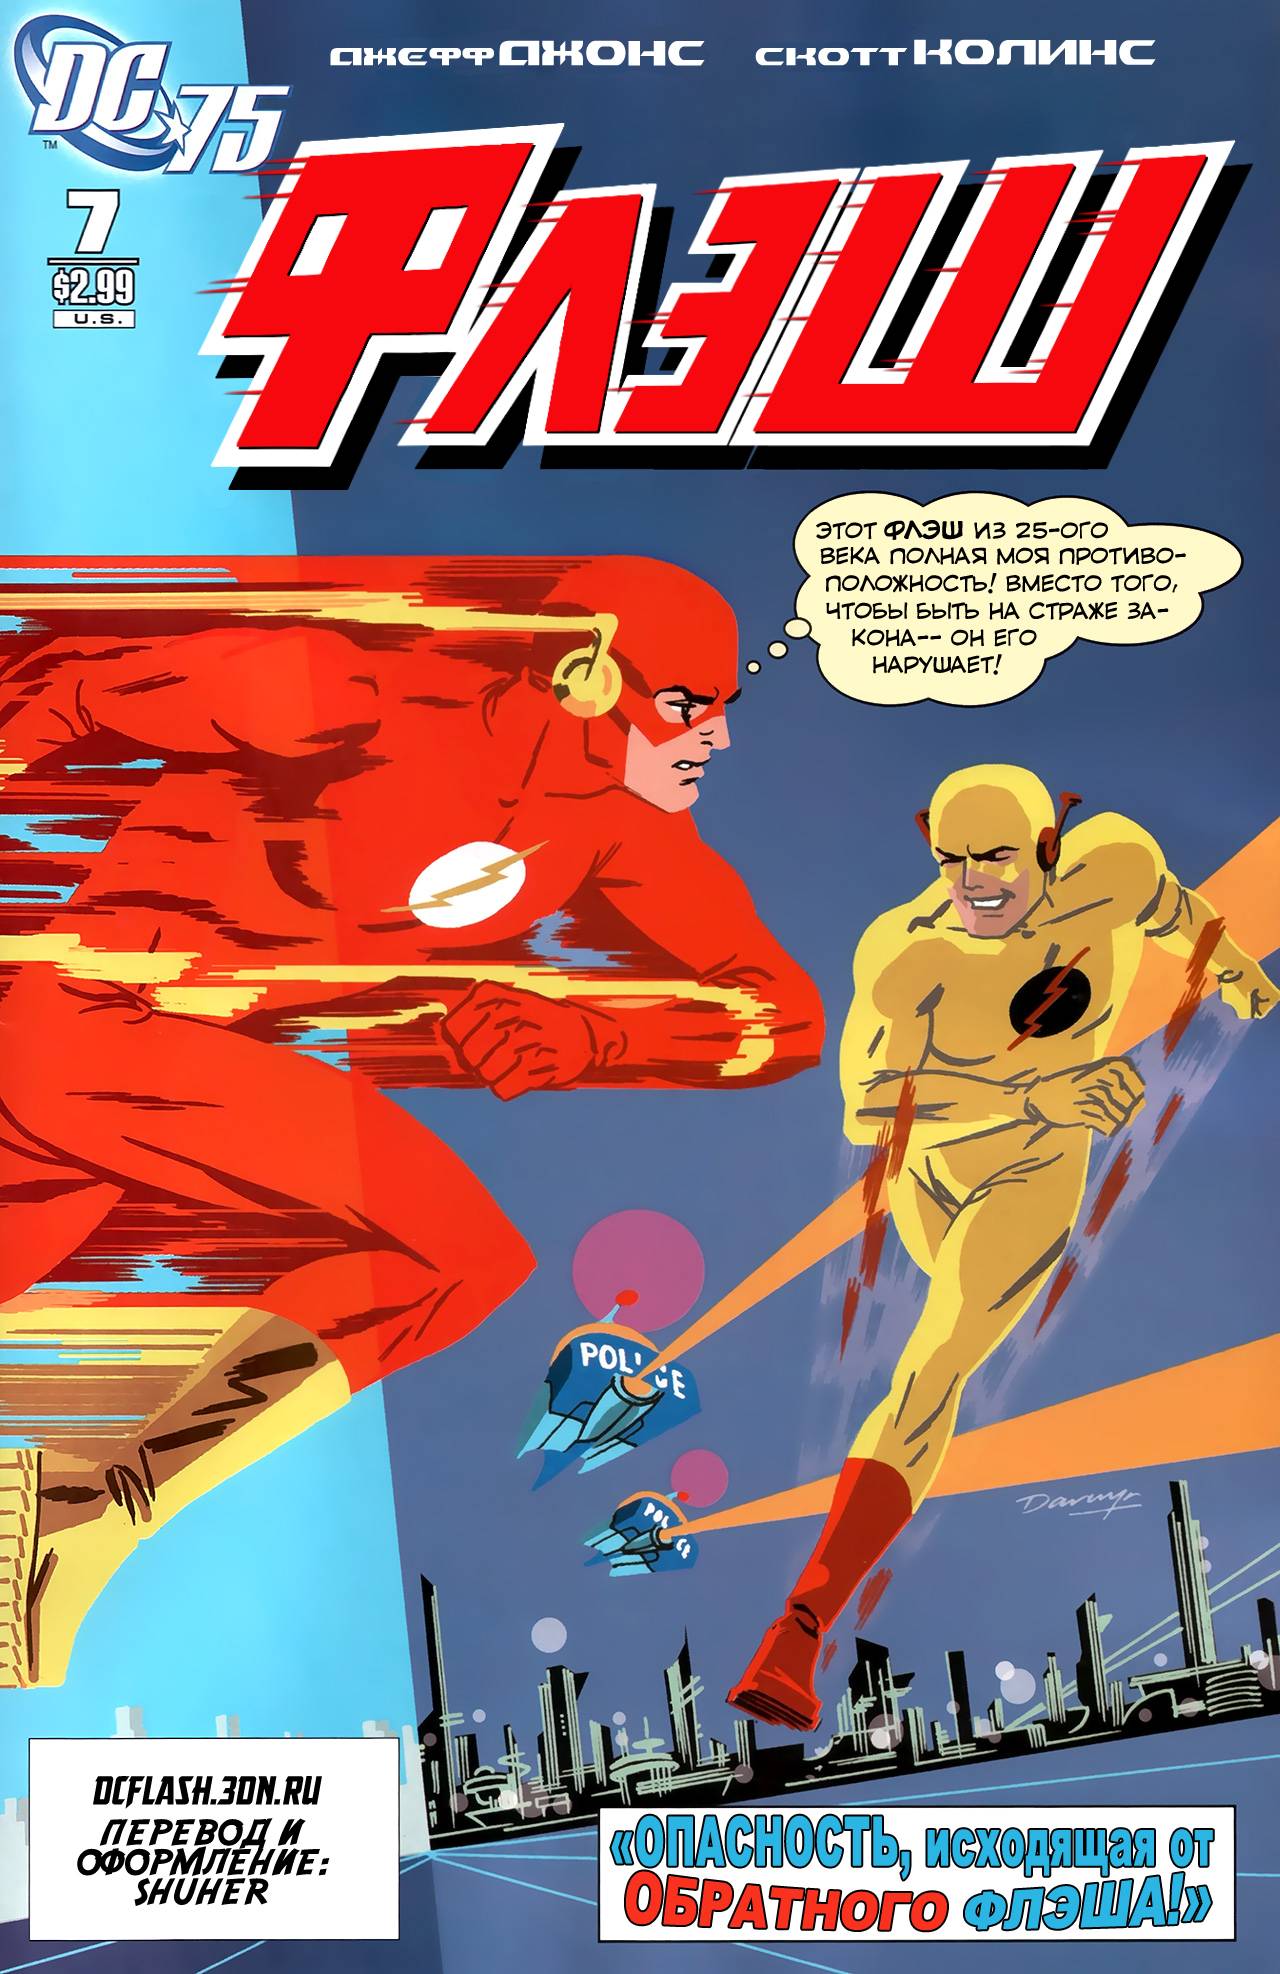 Flash 10 1. Флэш 10. Flash: #139. The Flash by Darwyn Cooke. Картинки флеша яркое.